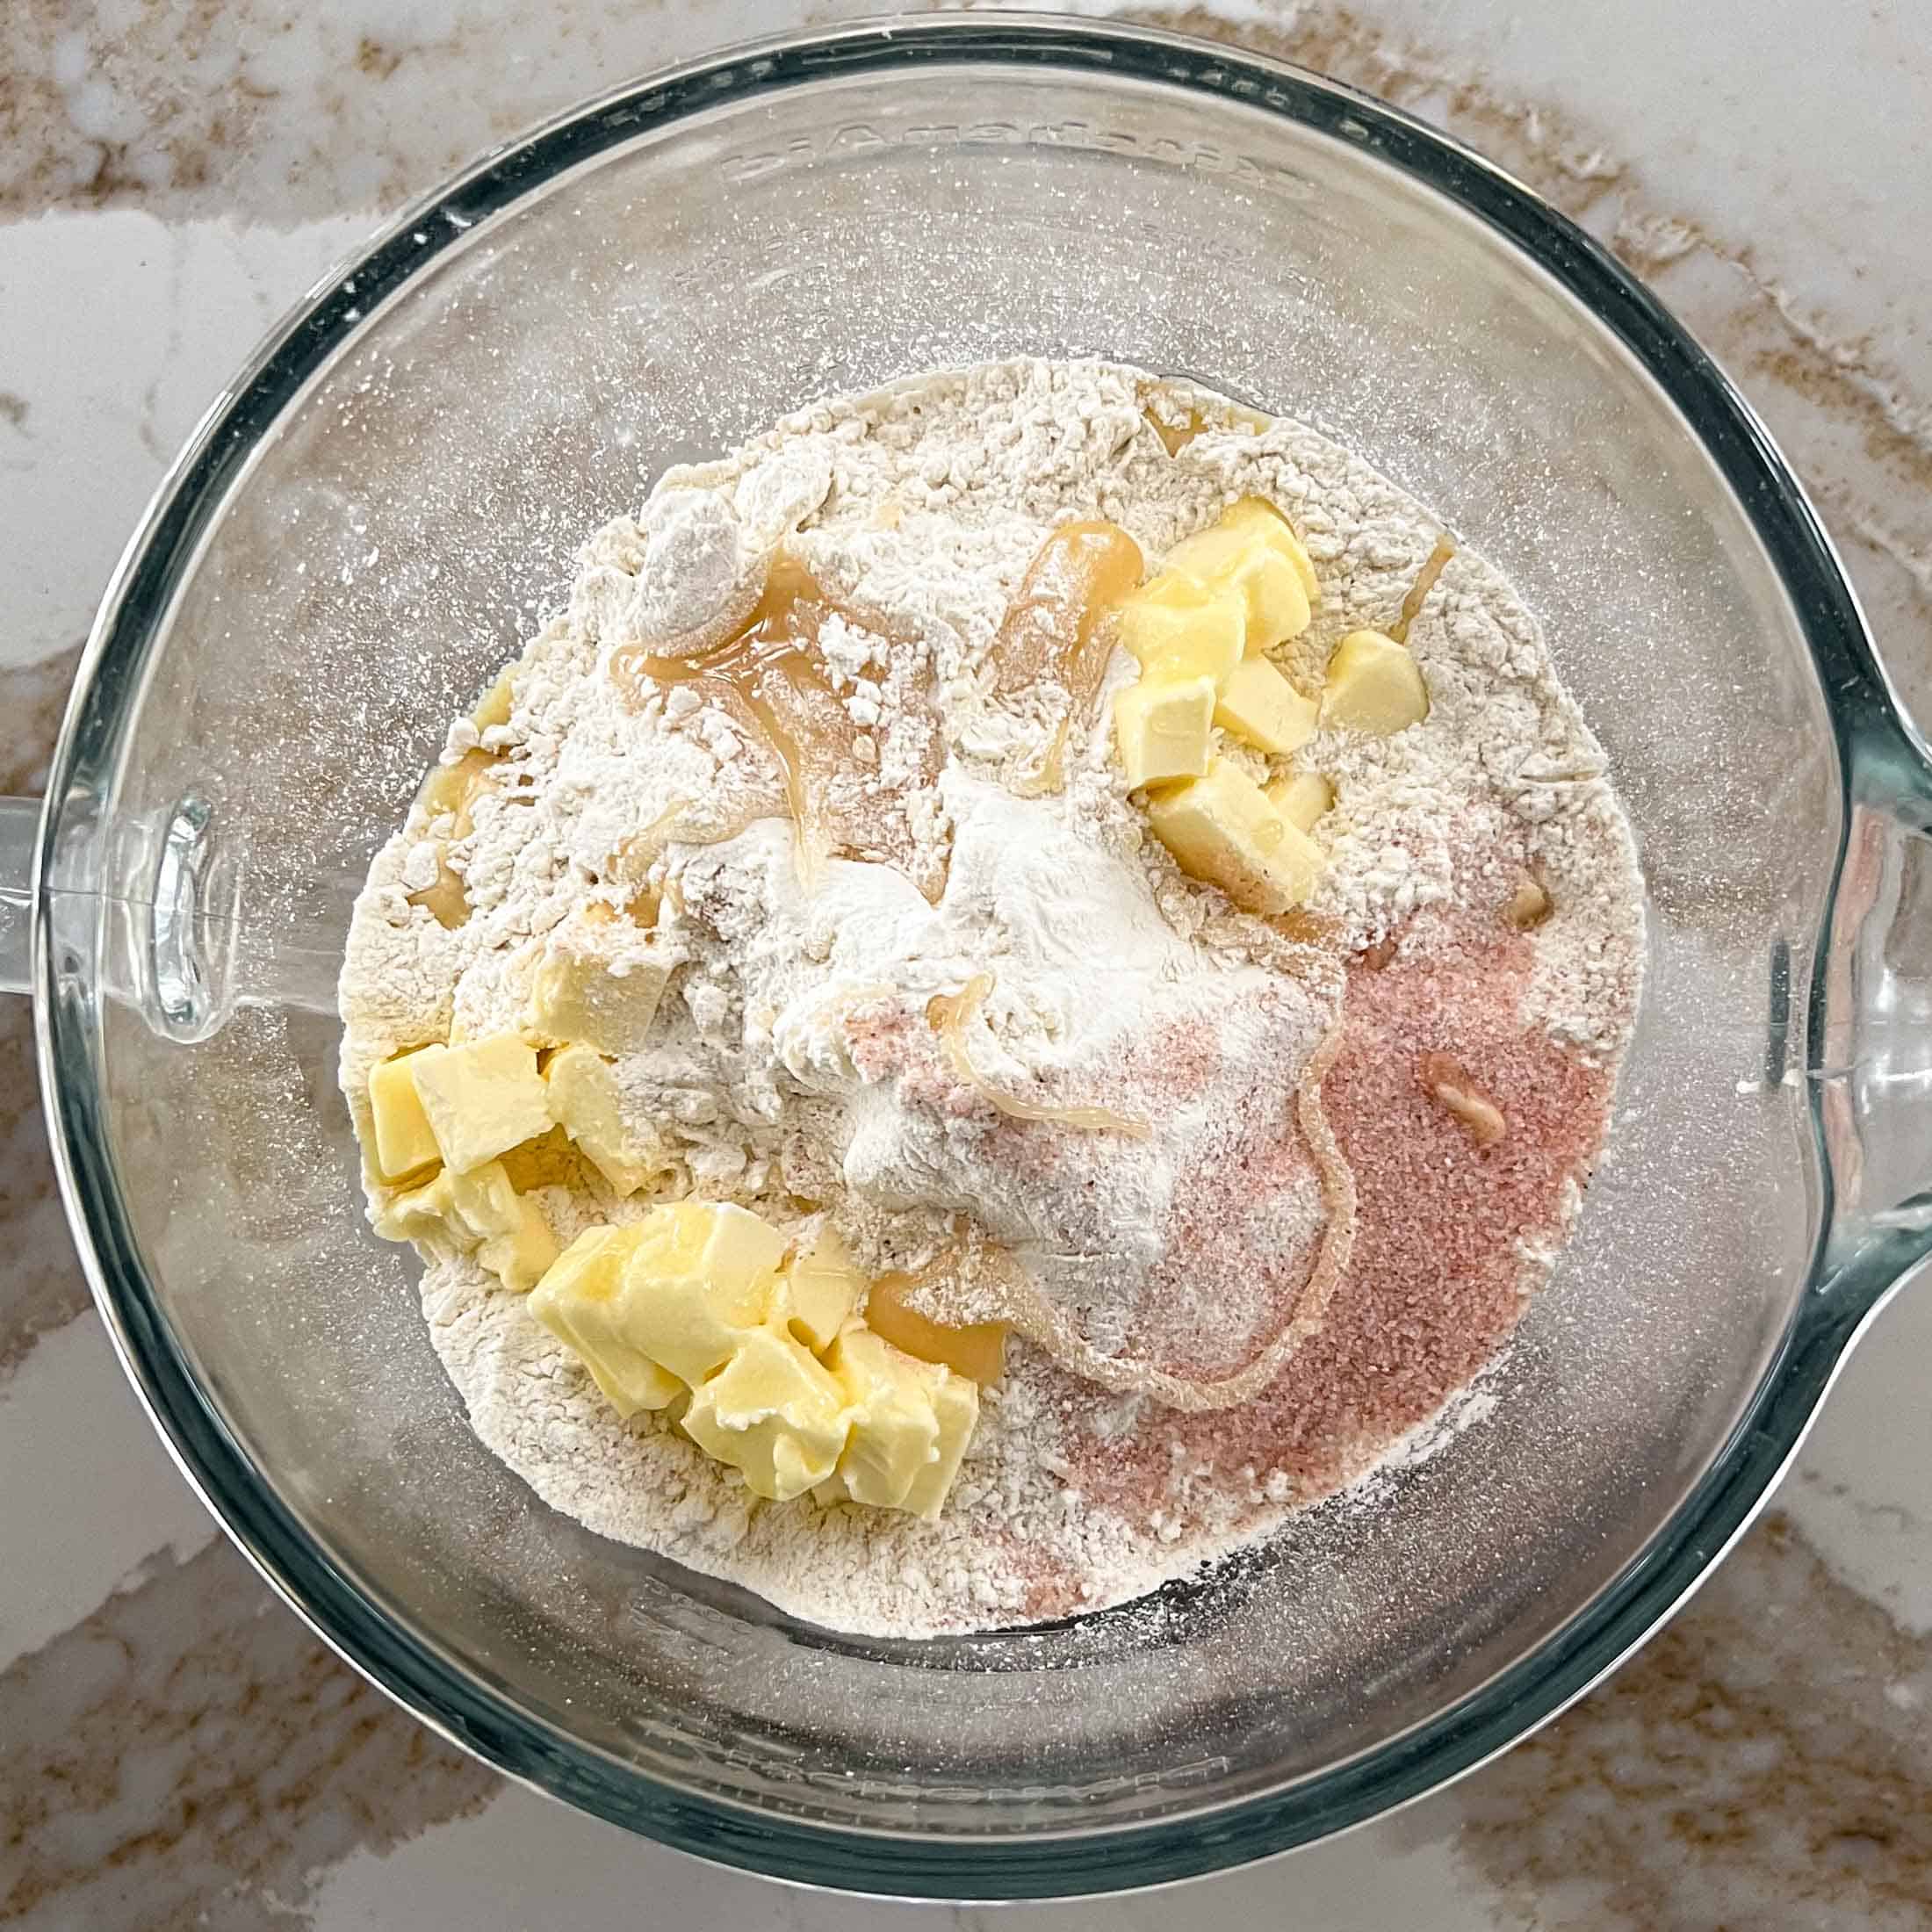 Butter, salt, honey, flour in a glass mixing bowl.